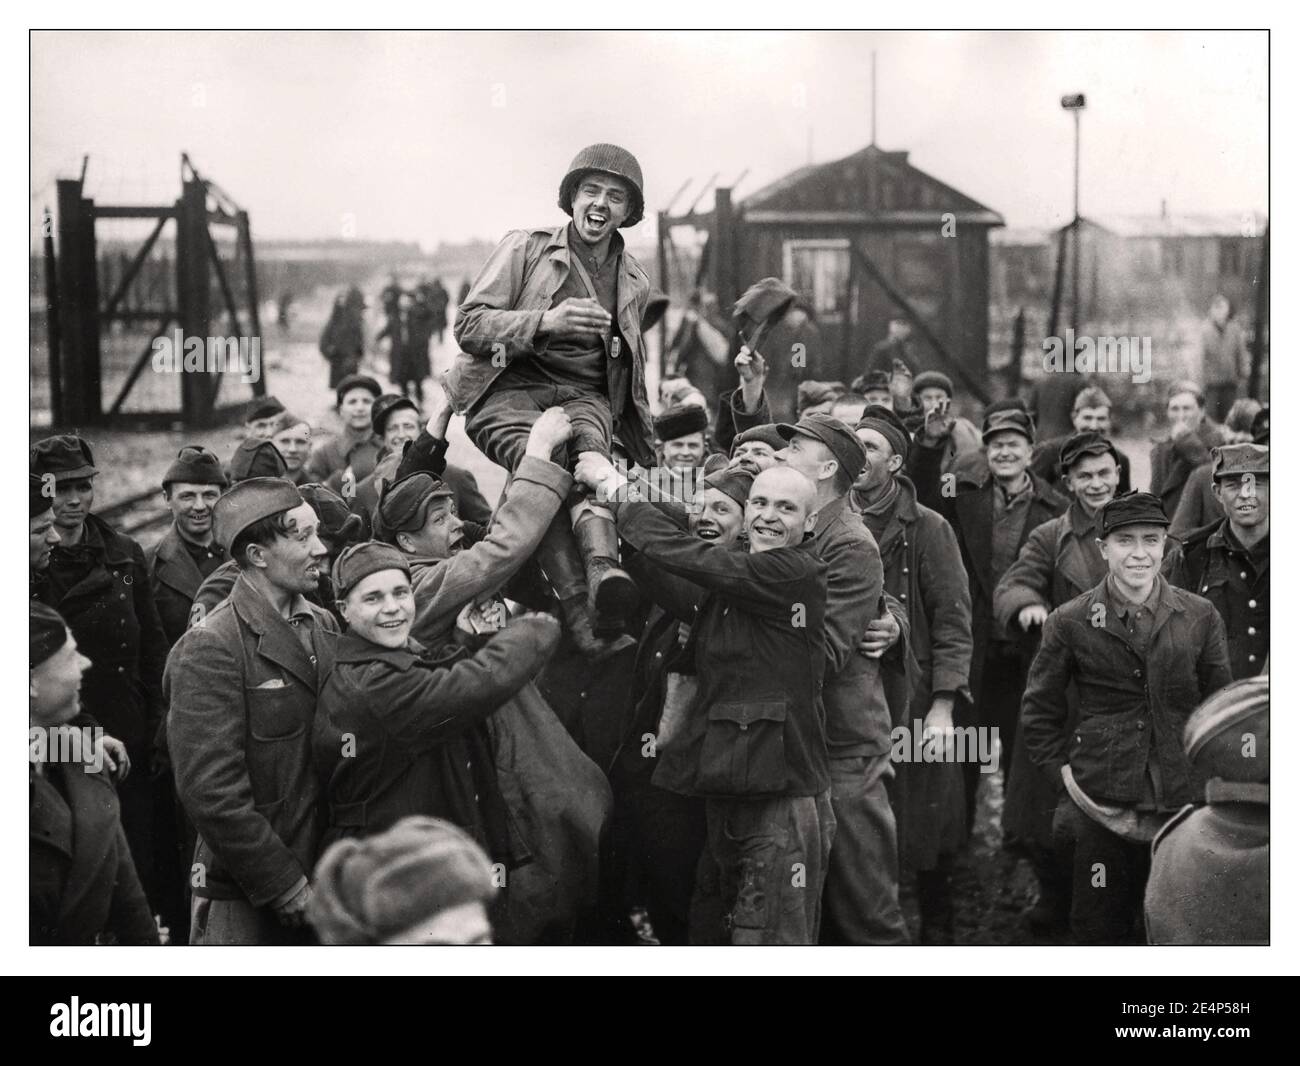 Liberazione dell'ESELHEIDE WW2 campo di concentramento nazista liberazione prigionieri di guerra russi che sollevarono un soldato americano dopo che l'esercito statunitense 9th li liberò dal loro campo di Eselheide Germania 9th aprile 1945 Foto Stock